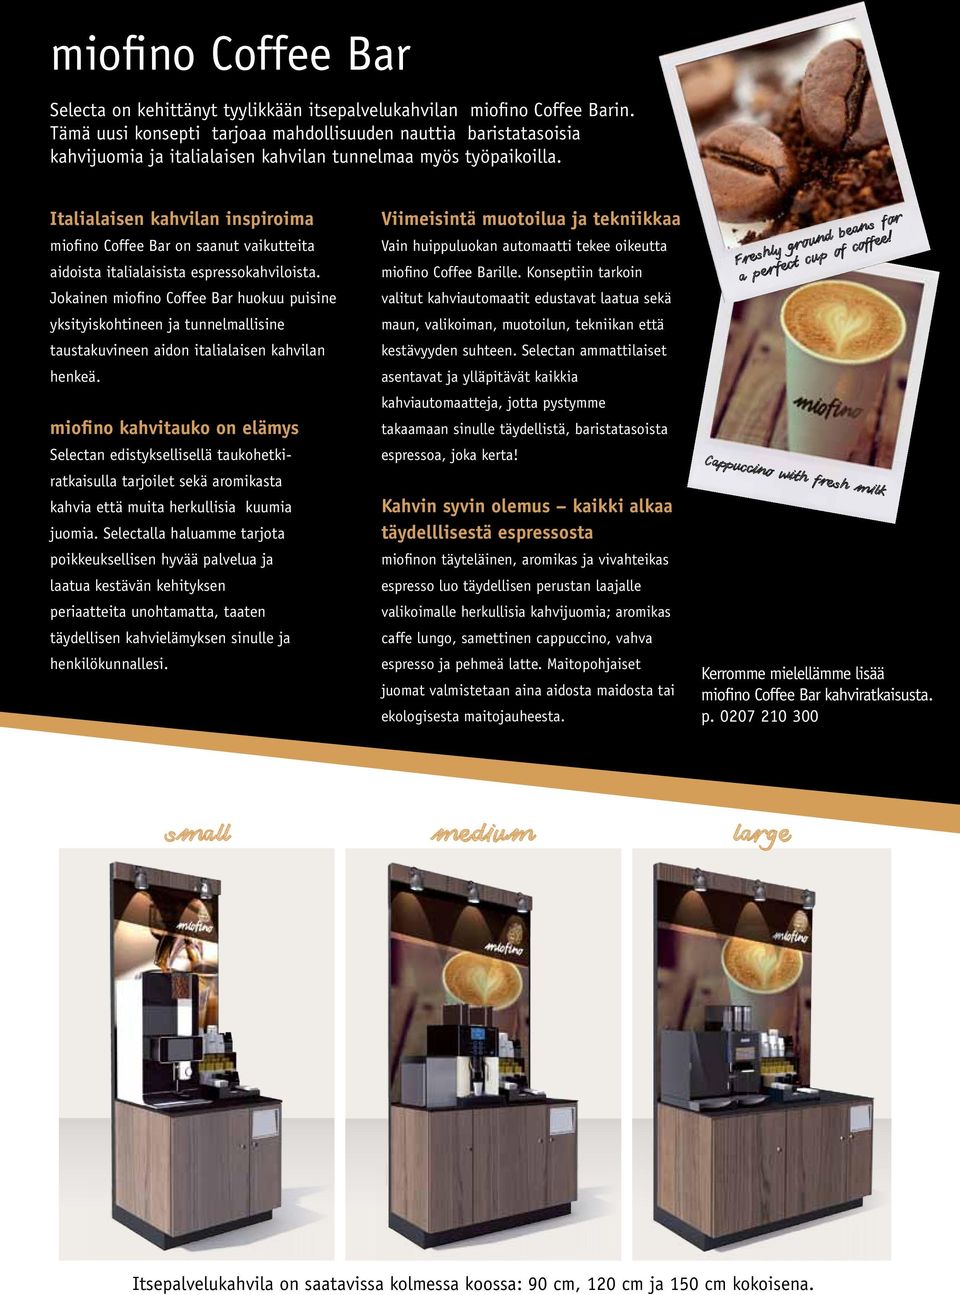 Italialaisen kahvilan inspiroima Viimeisintä muotoilua ja tekniikkaa miofino Coffee Bar on saanut vaikutteita Vain huippuluokan automaatti tekee oikeutta aidoista italialaisista espressokahviloista.